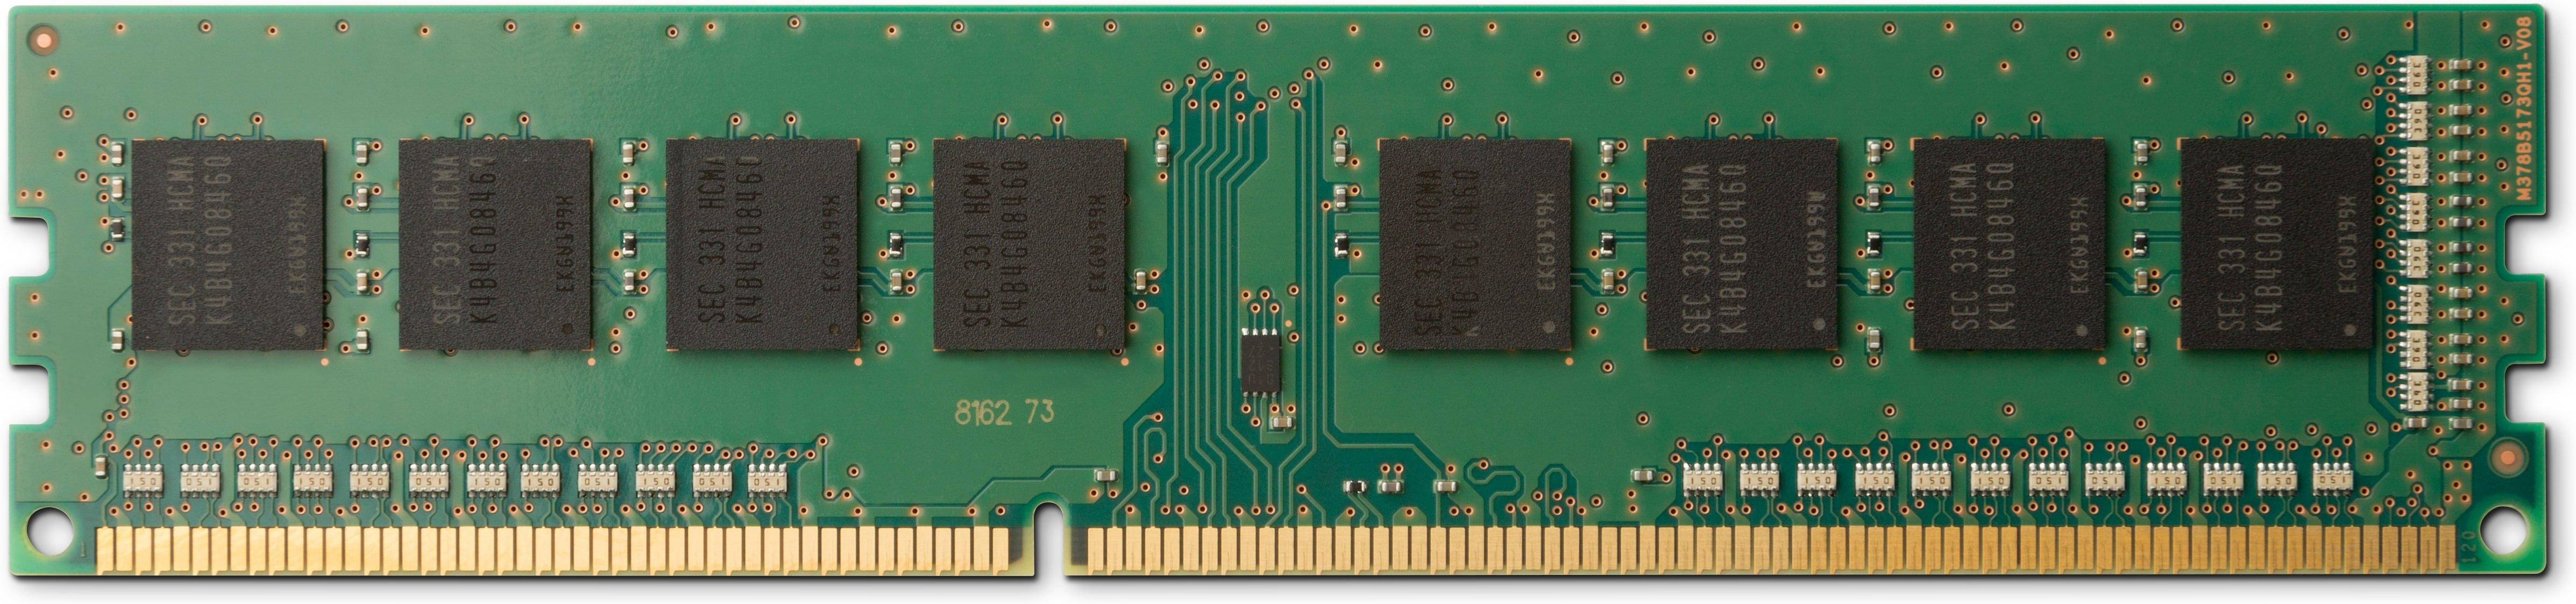 Hewlett-Packard  13L72AA memoria 32 GB 1 x 32 GB DDR4 3200 MHz 